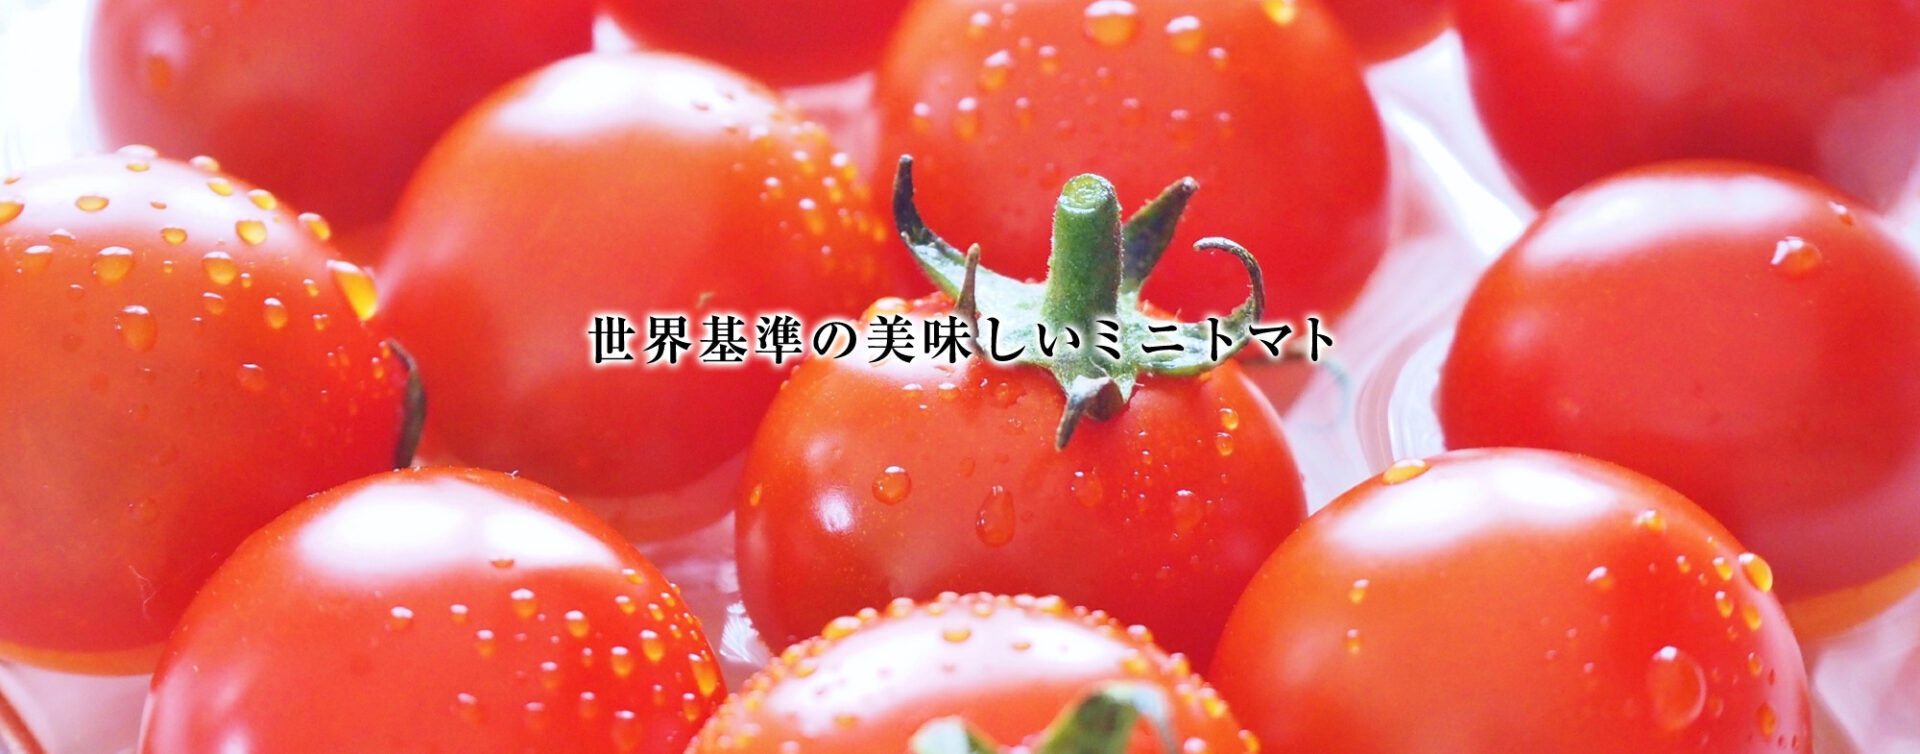 世界基準の美味しいミニトマト